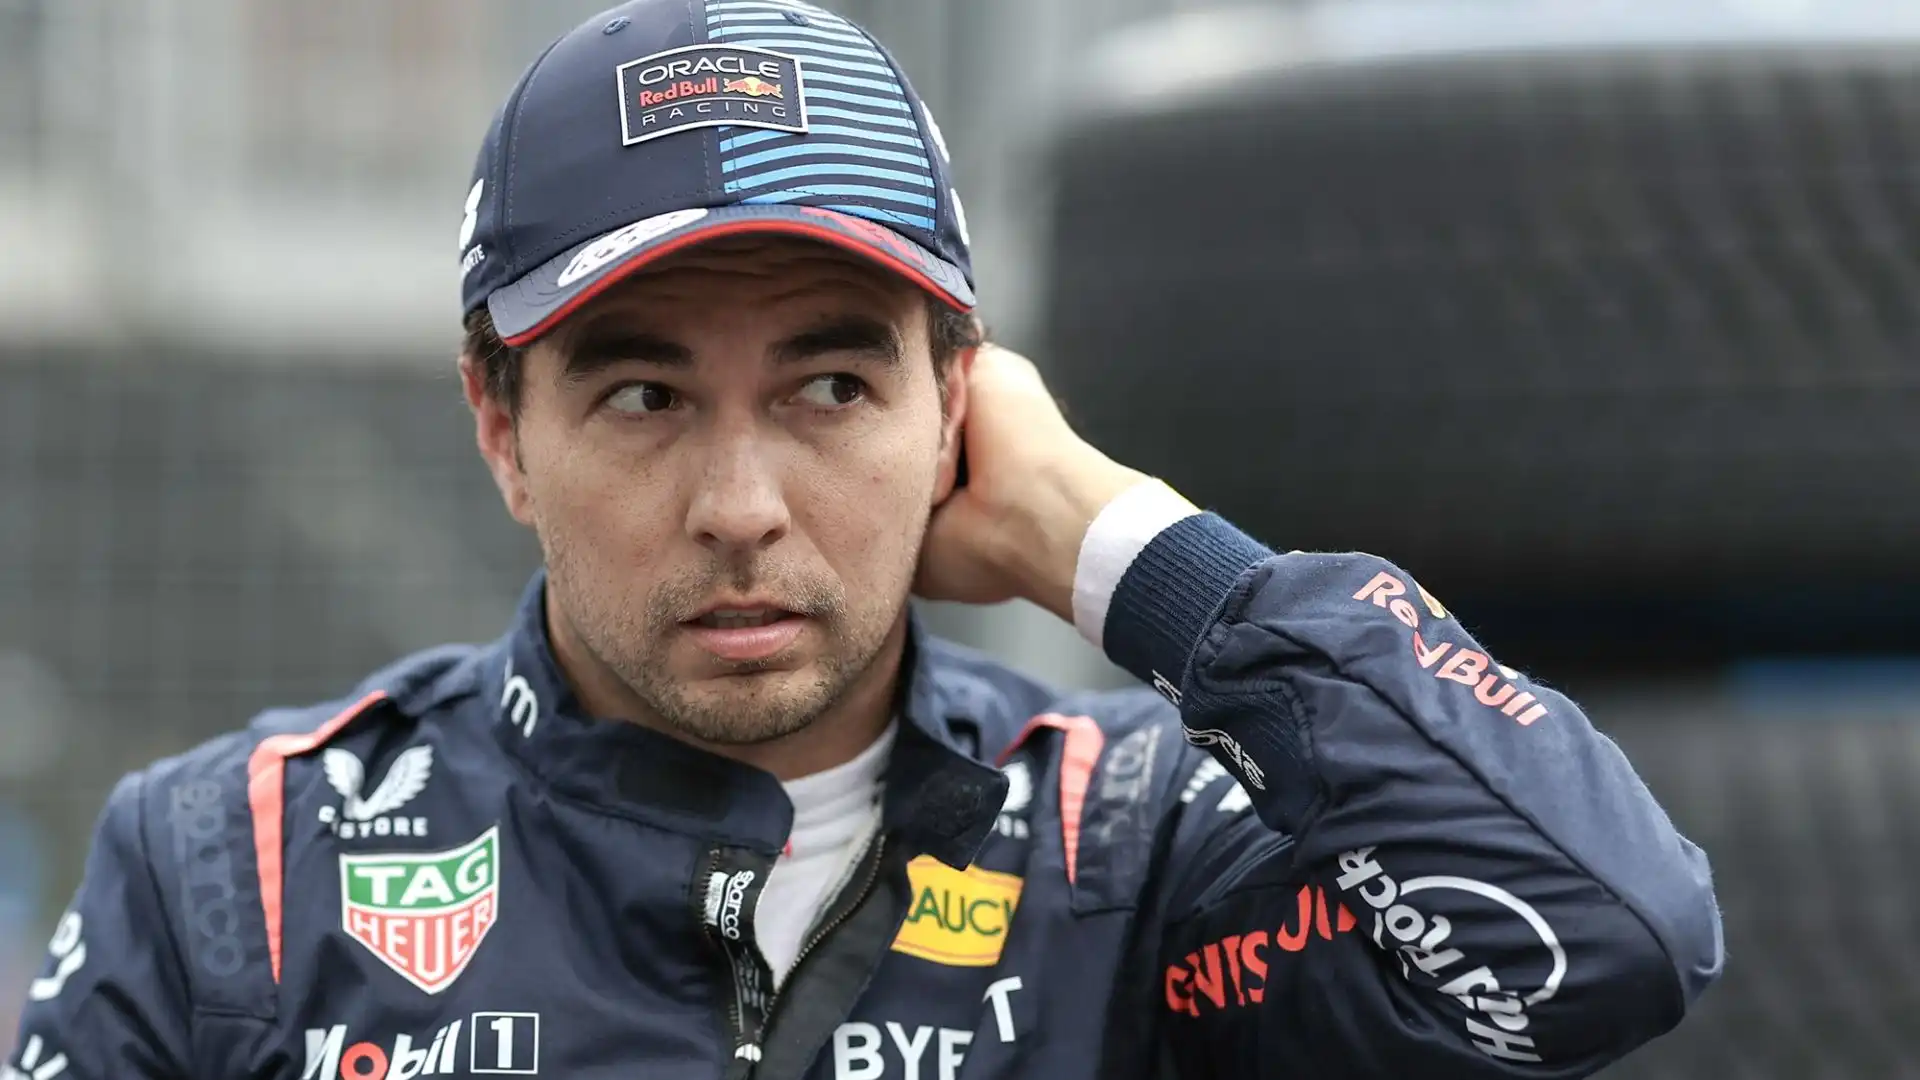 Perez è fiducioso in vista della gara in Austria: "Penso che sarà una bella gara per noi"